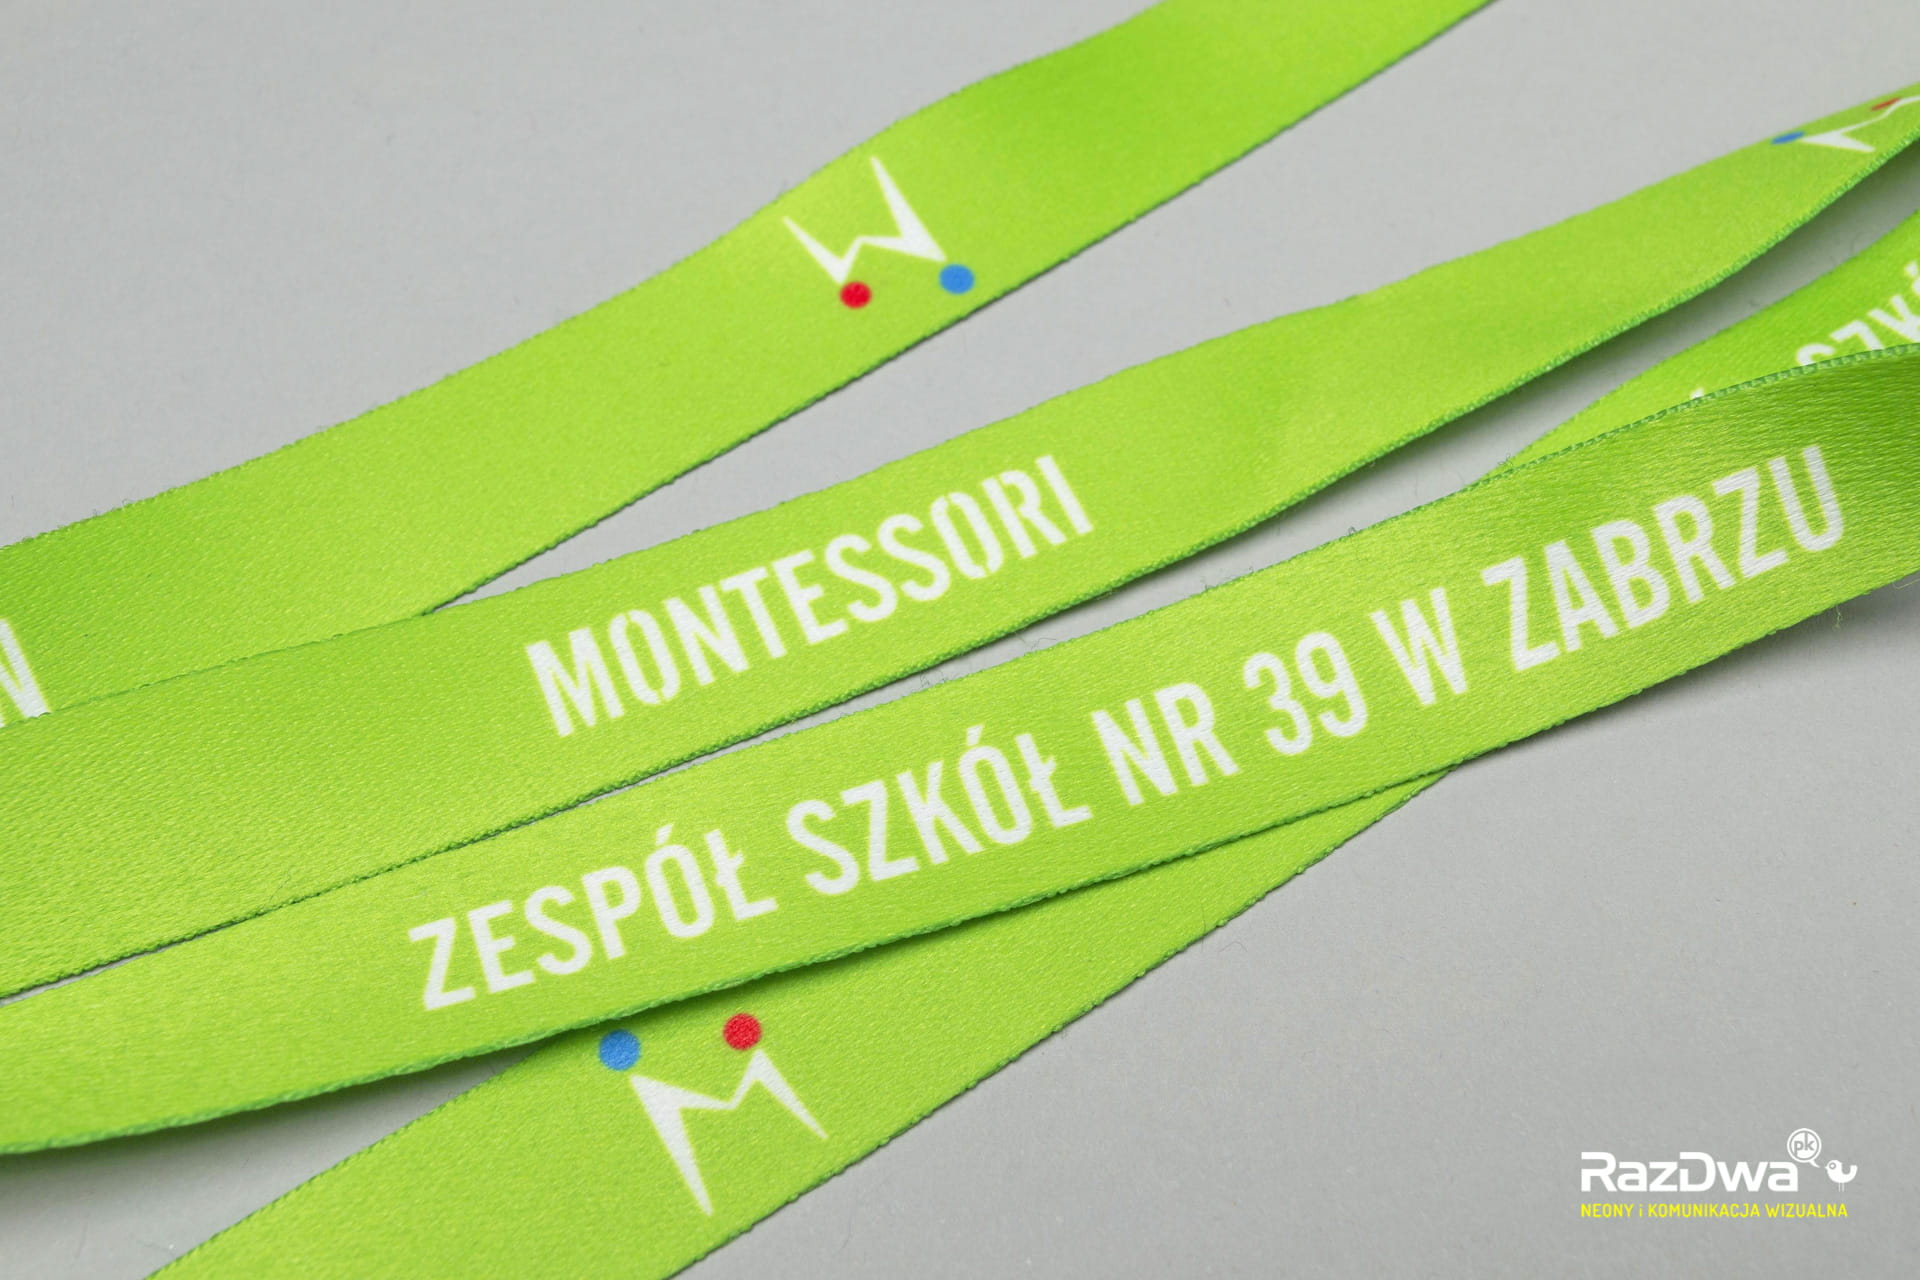 smycz-z-logo-montessori-zabrze-sp-39-04